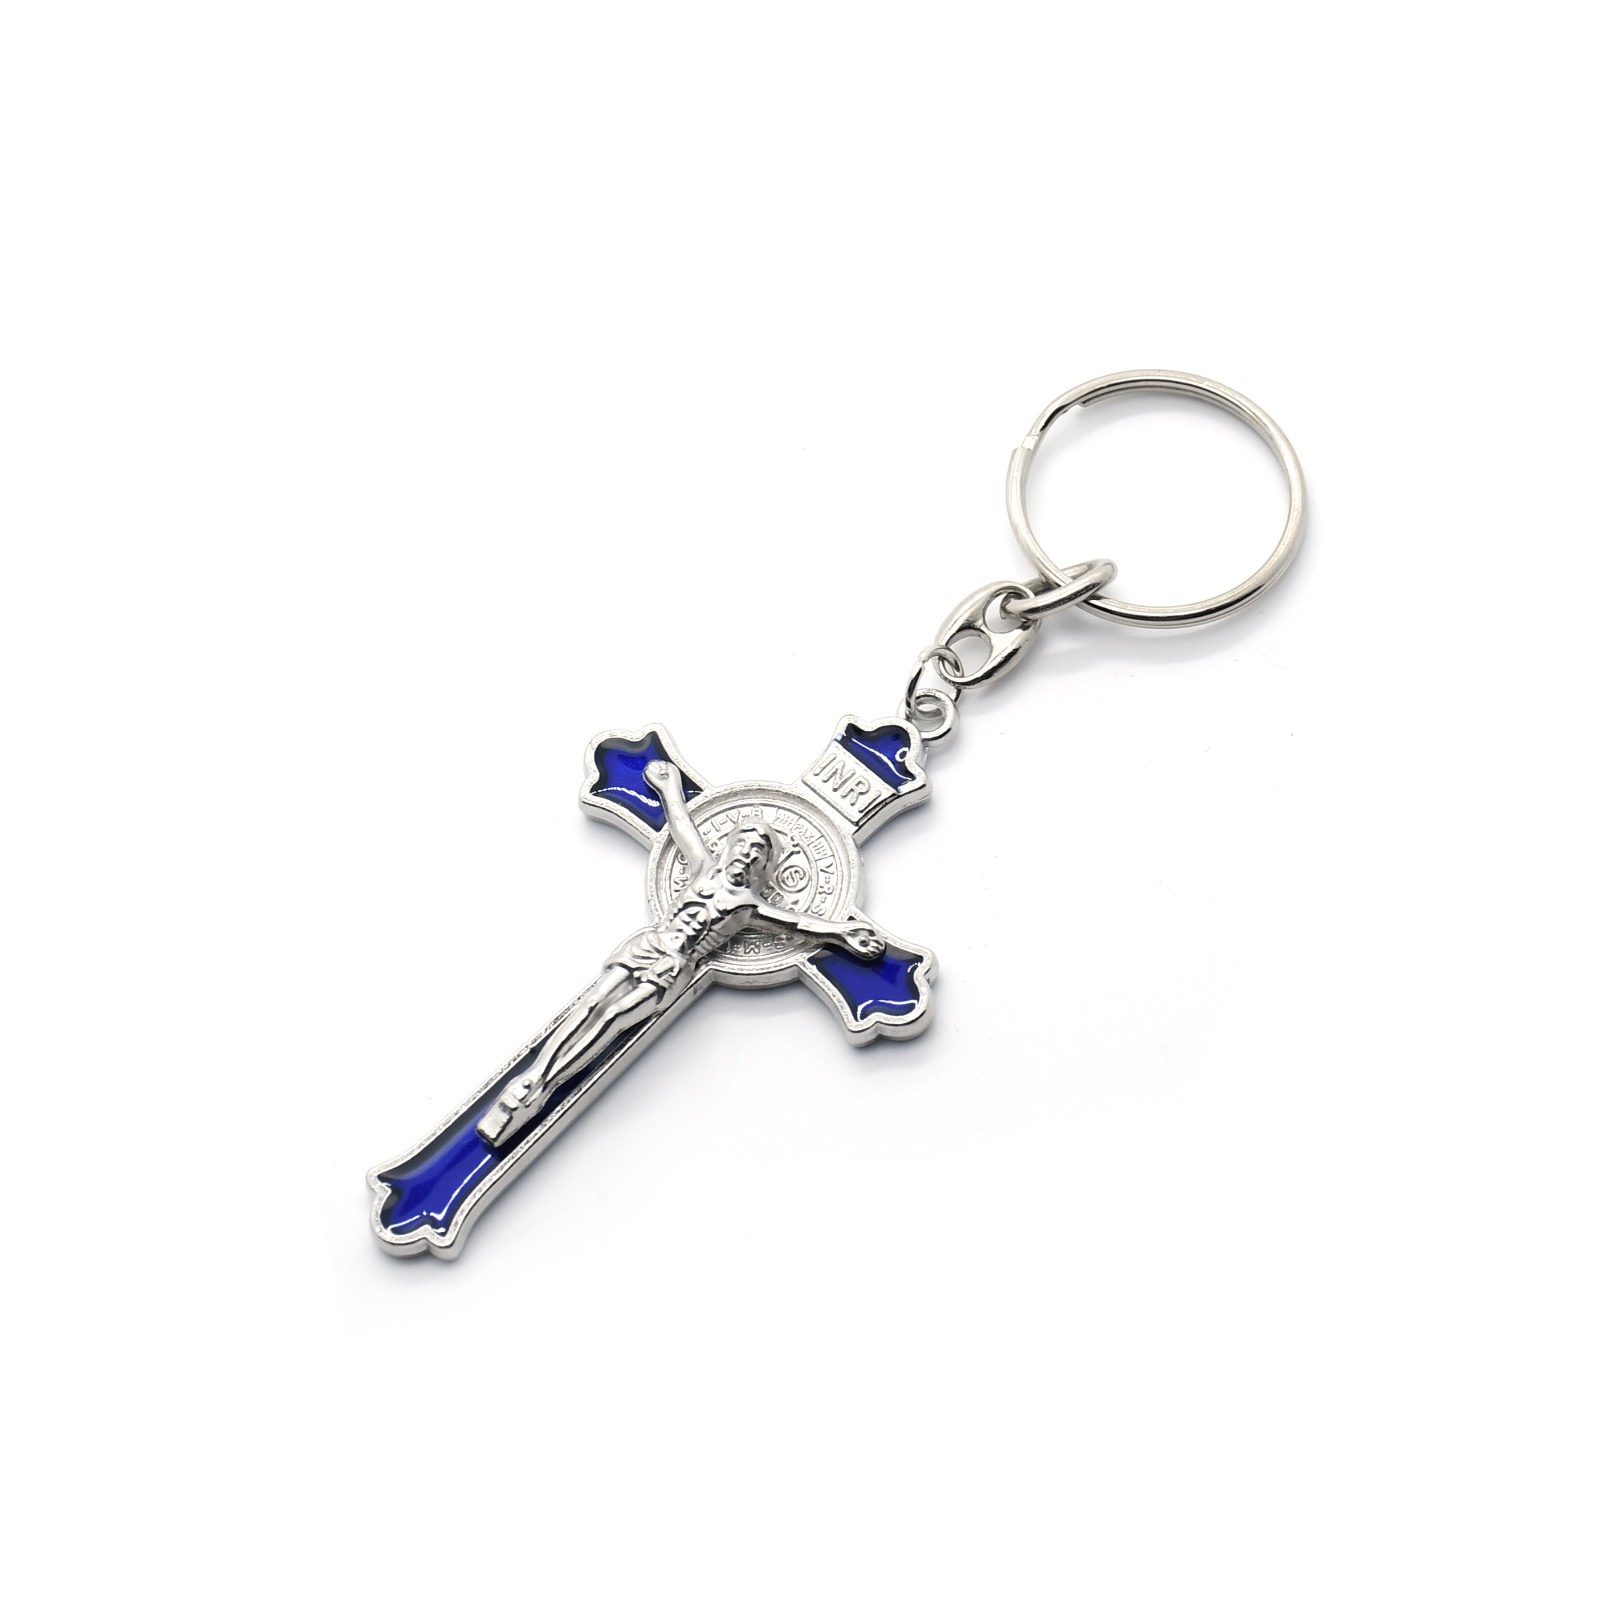 4.5*7.6cm十字架锁匙扣挂件圈环饰品旅游礼品赠品纪念品